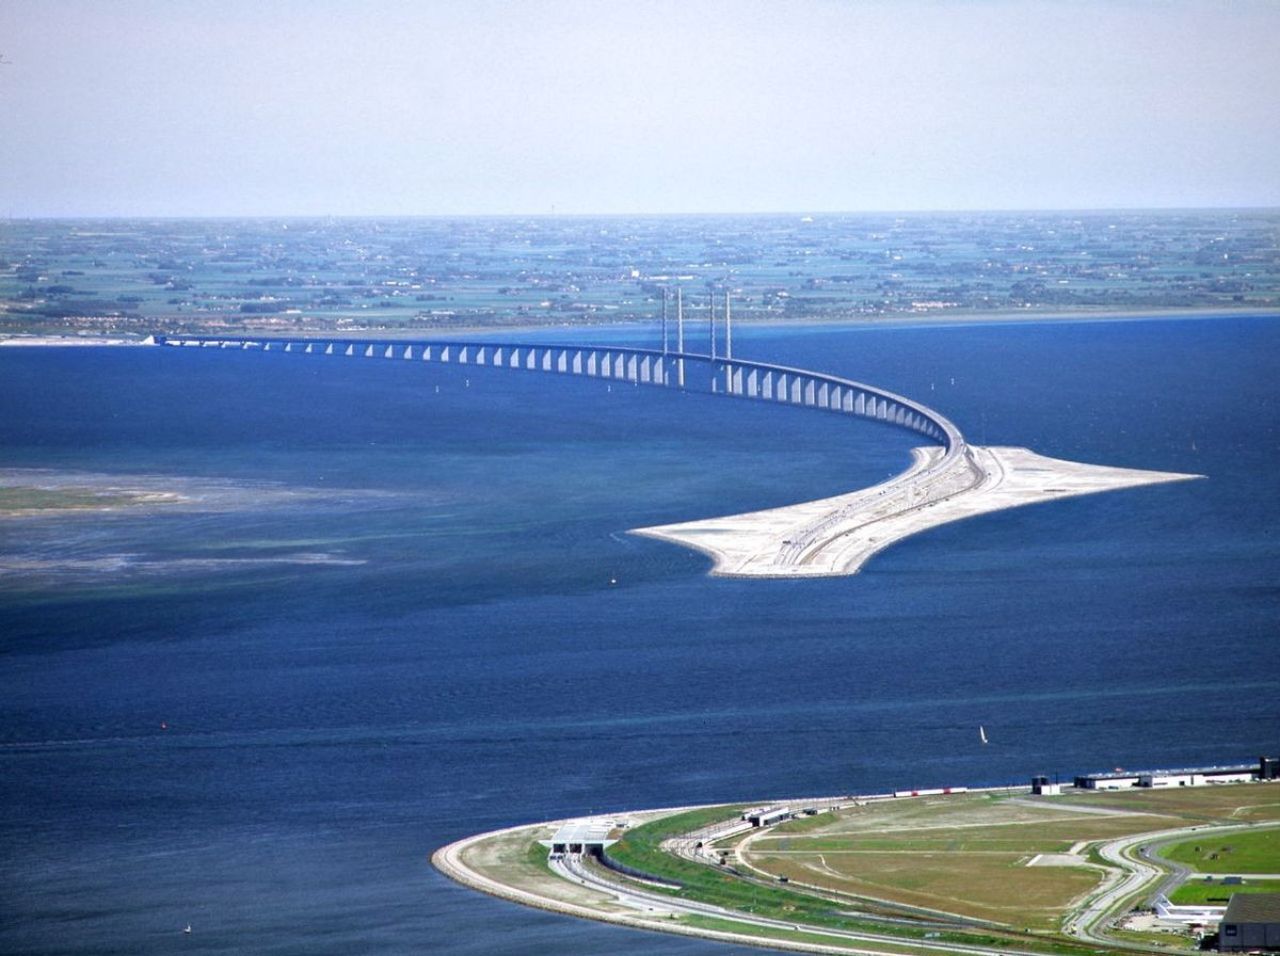 پل ریلی جاده ای معروف “اورسوند” مرز بین دانمارک و سوئد + عکس 